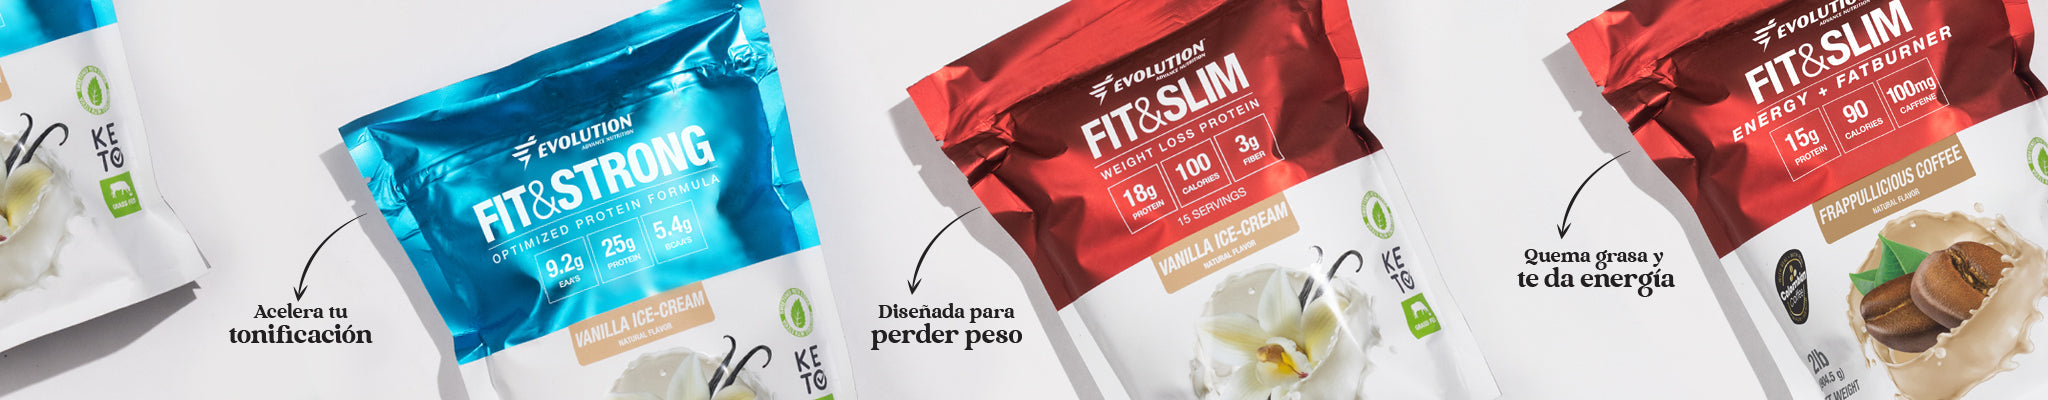 Envase de proteína en polvo Fit&Slim para bajar de peso, Envase de Fit&Strong para ganar músculos sin grasa, Envase de Fit&Slim Energy + Fat burner la proteína con café colombiano que acelera tu metabolismo y te llena de energía